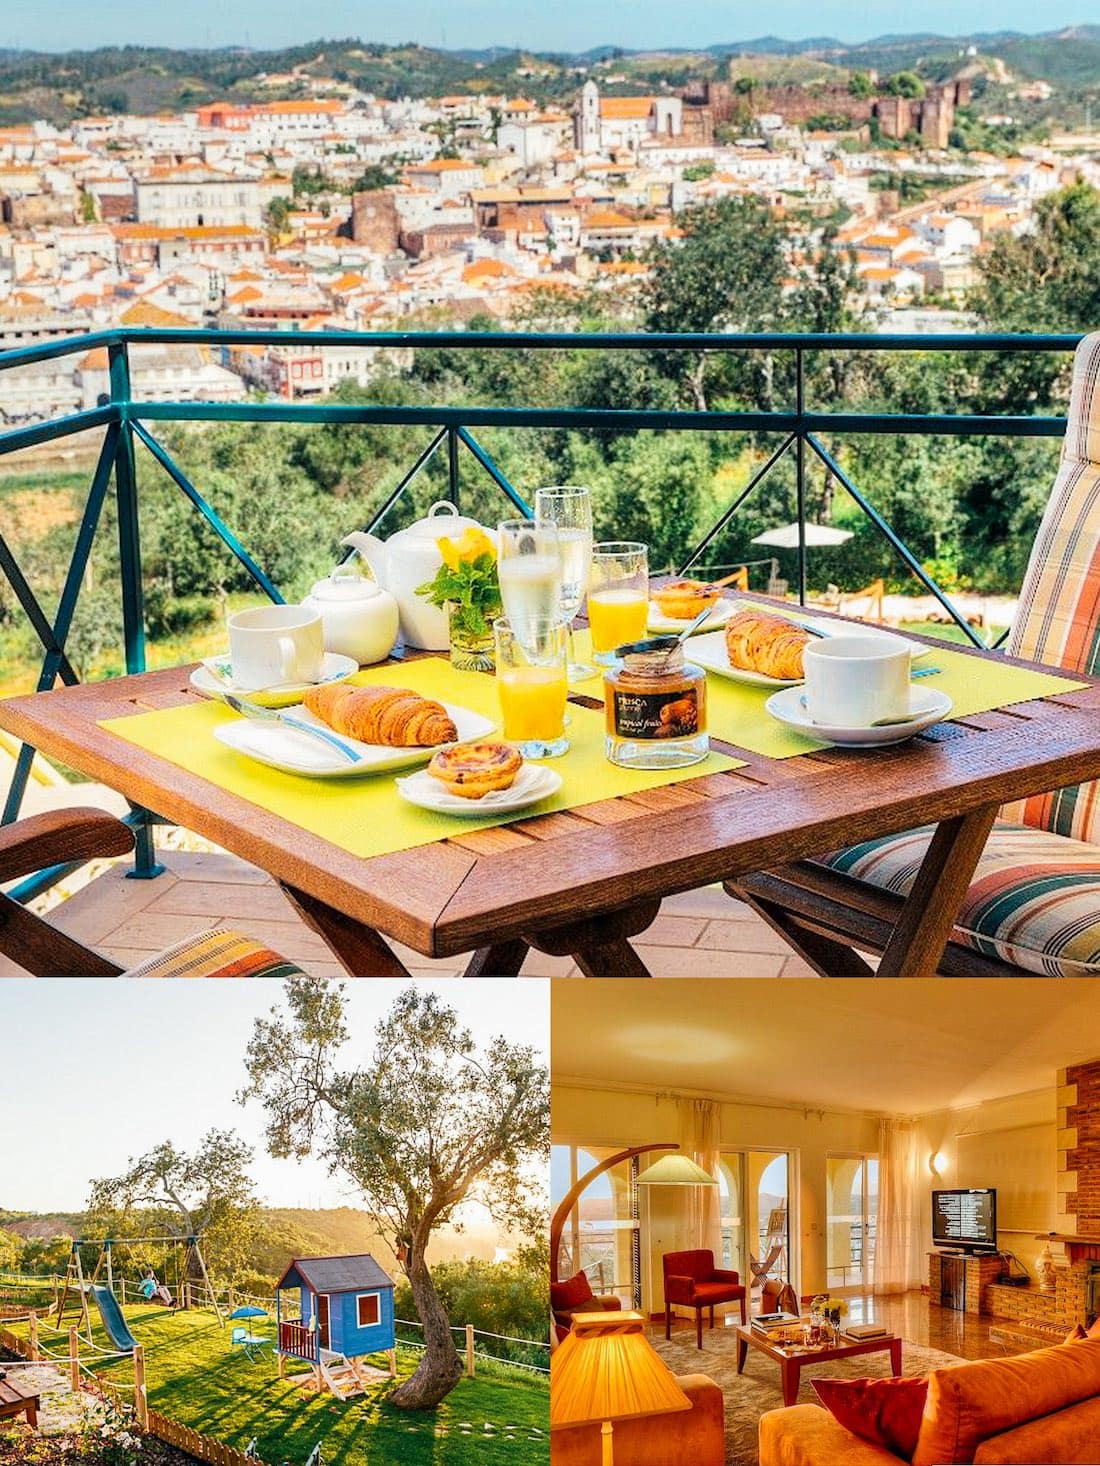 Holiday villa in Algarve, Portugal